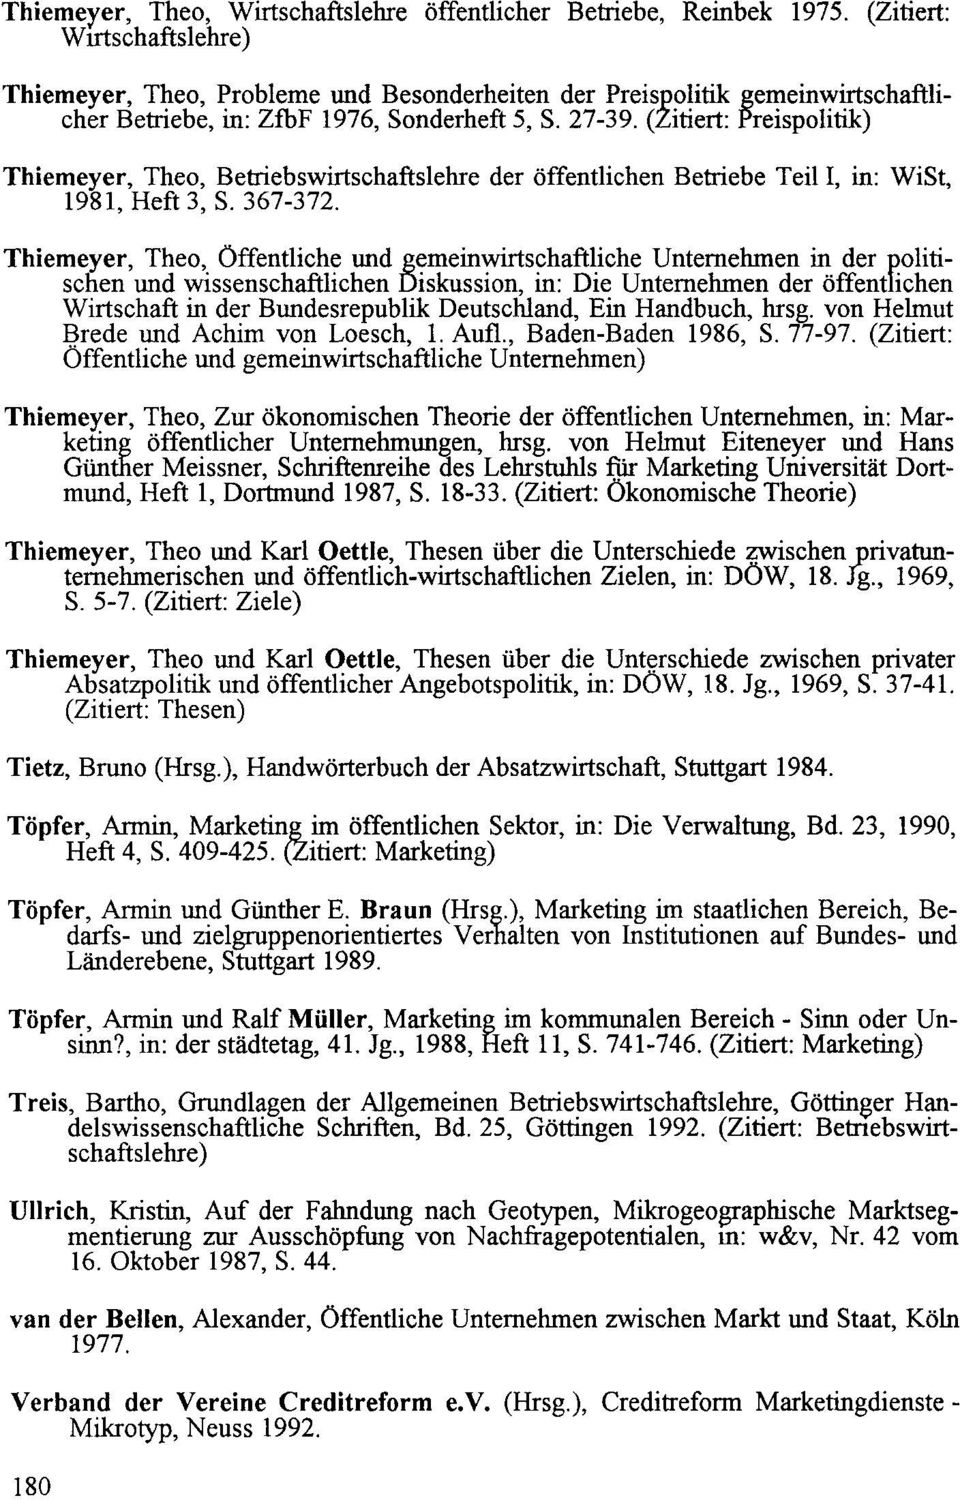 (Zitiert: Preispolitik) Thiemeyer, Theo, Betriebswirtschaftslehre der öffentlichen Betriebe Teil I, in: WiSt, 1981, Heft 3, S. 367-372. Thiemeyer, Theo,_ Öffentliche und g!;!